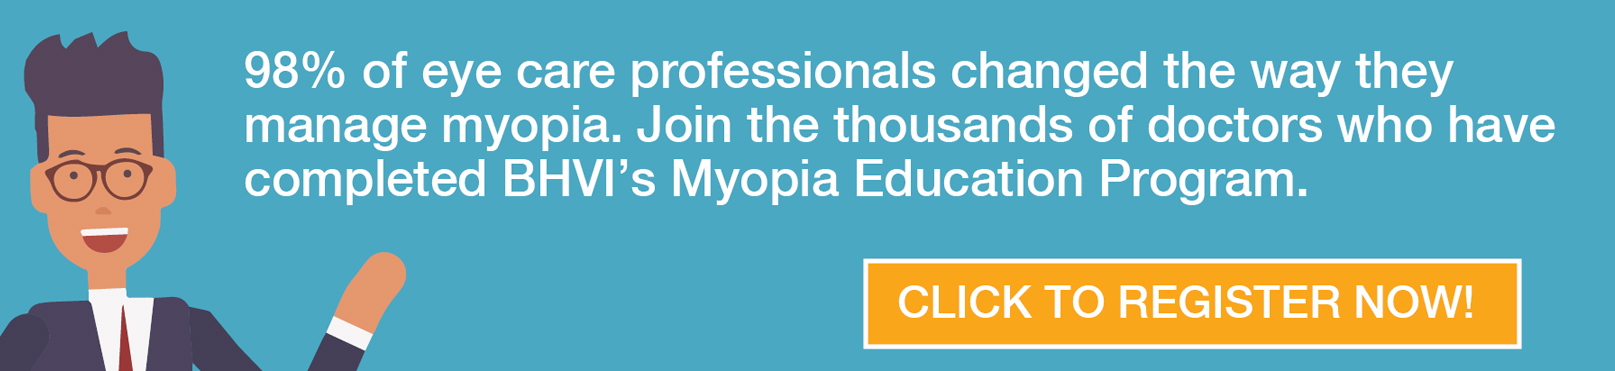 myopia education program